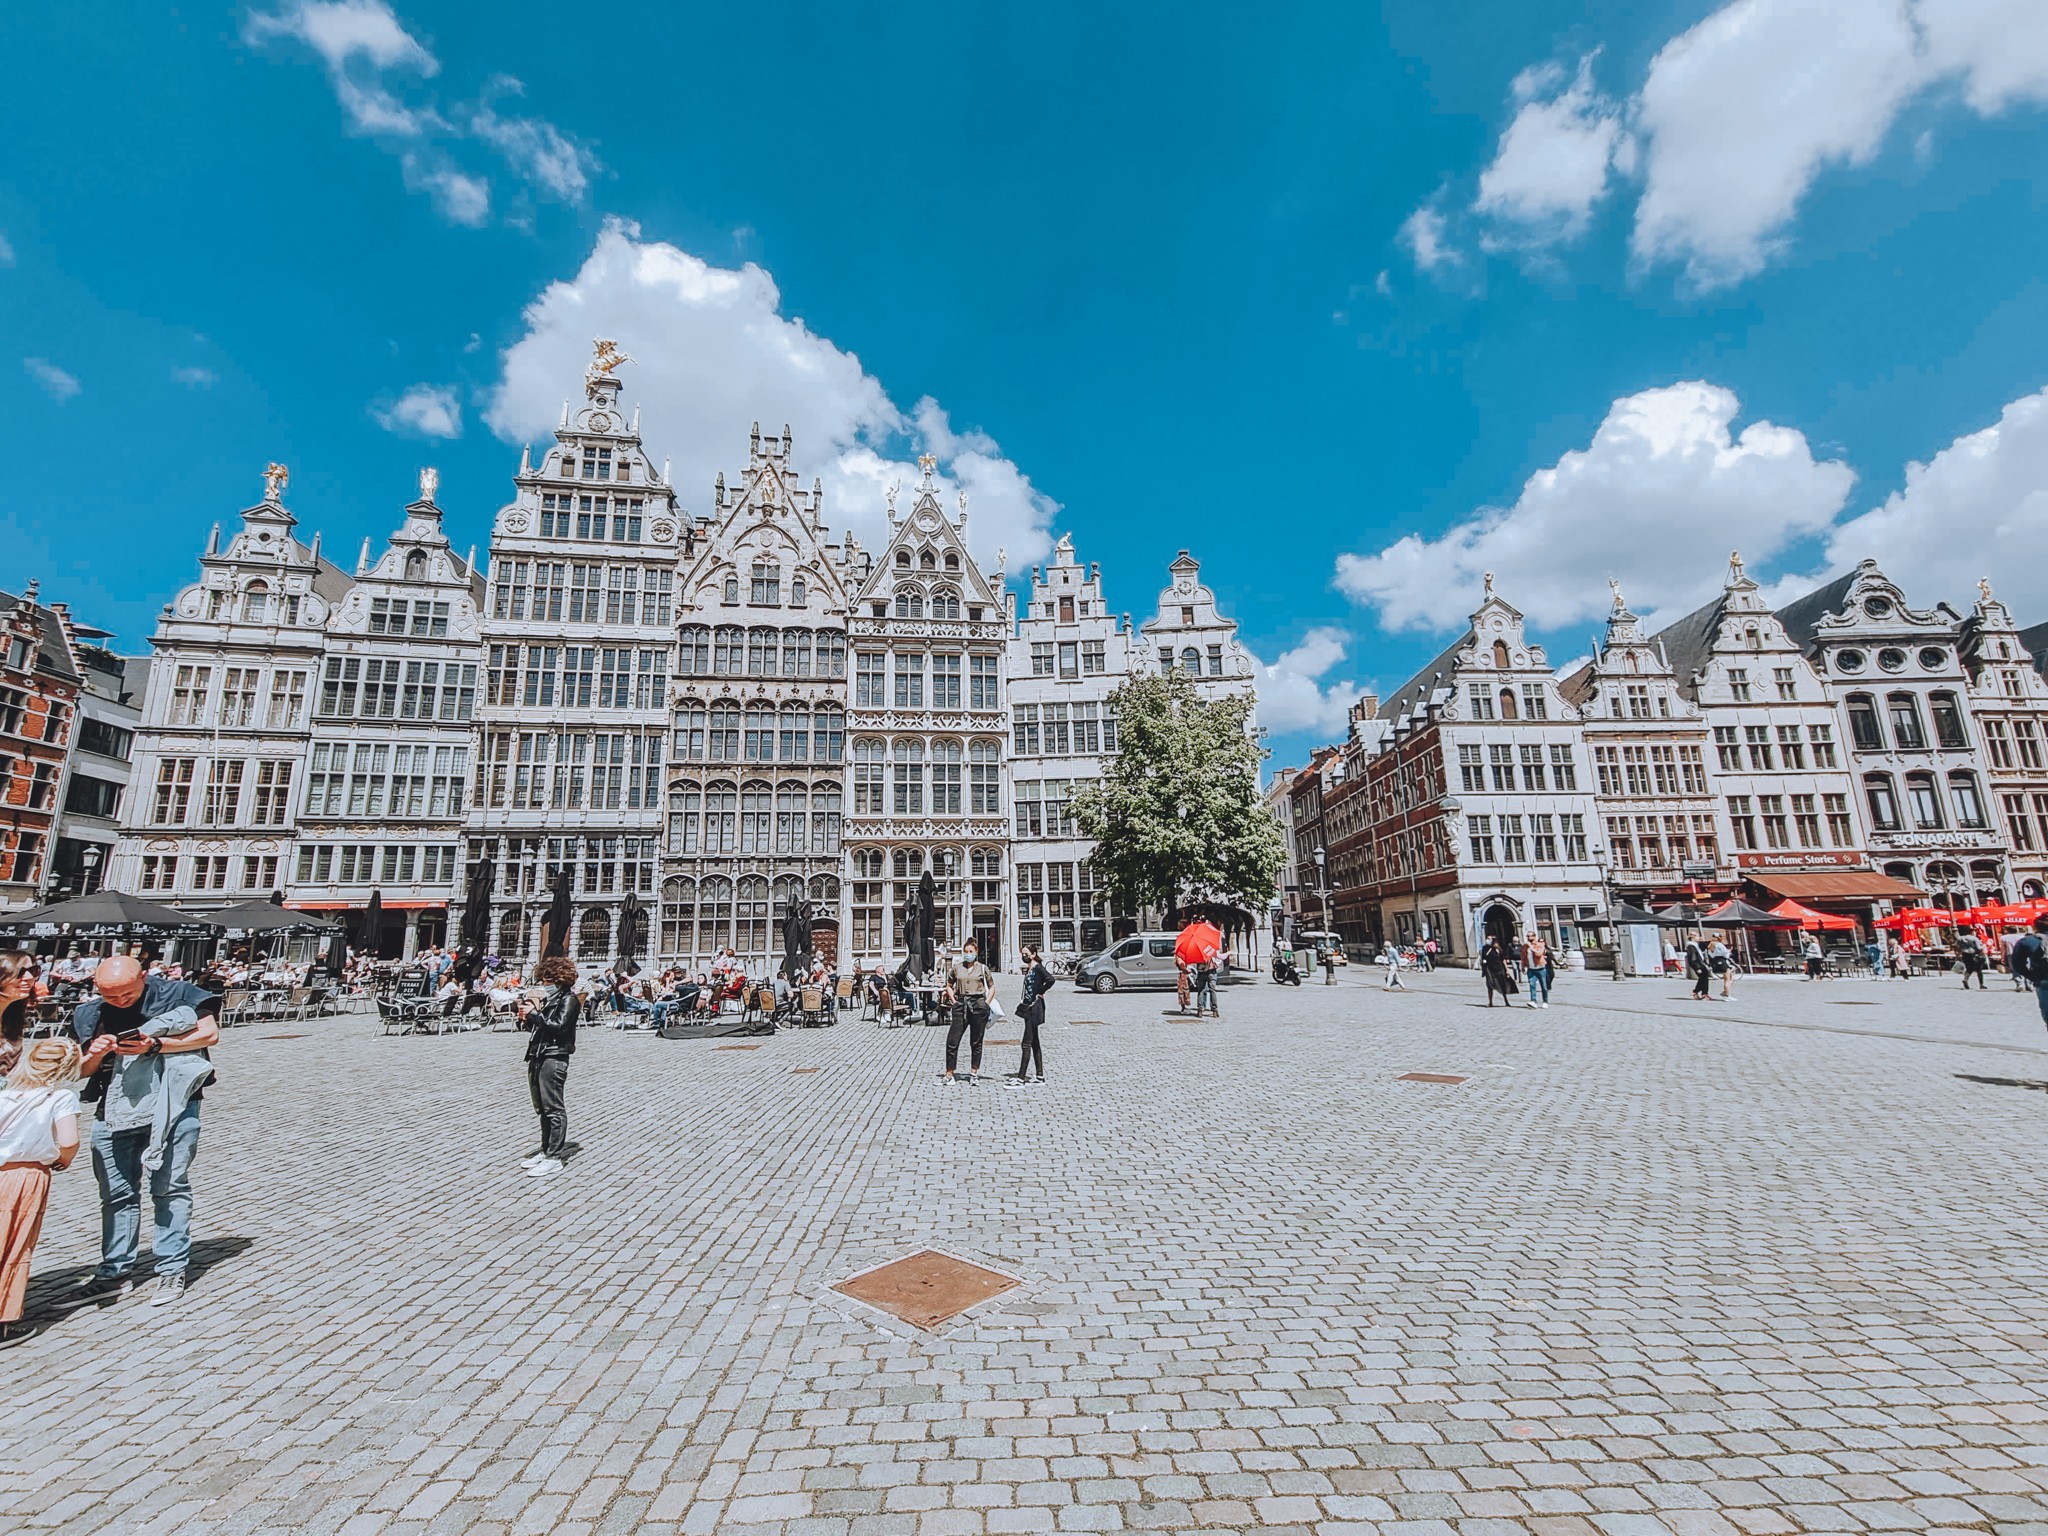 Grote Markt - Antwerp